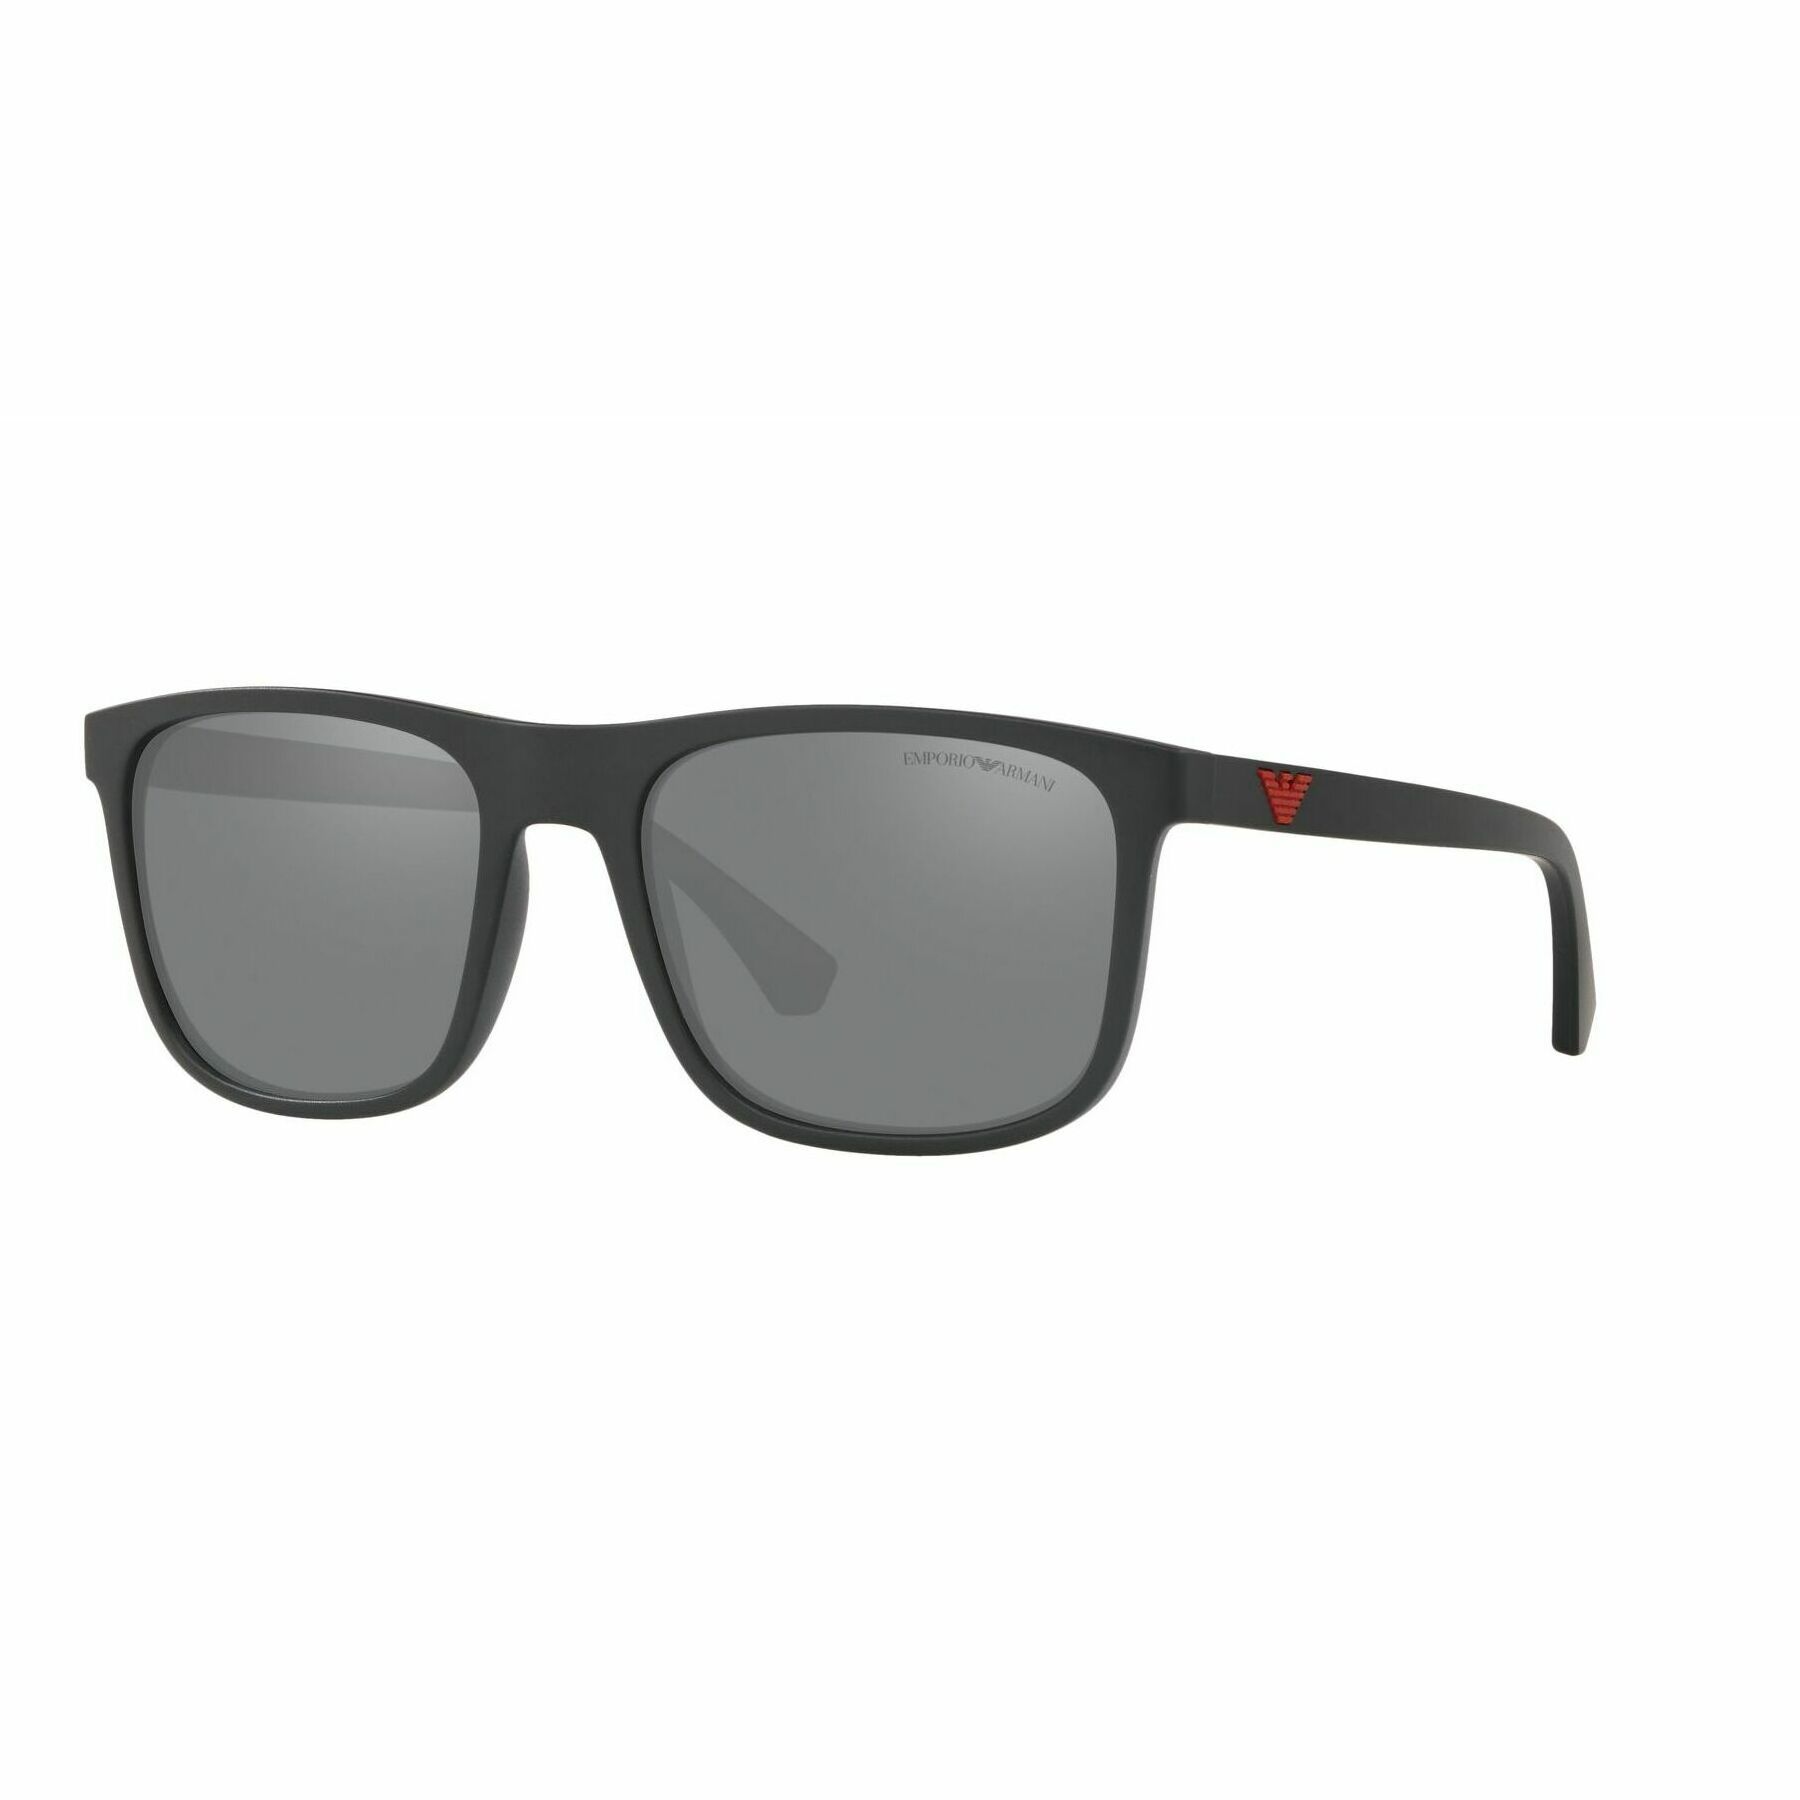 EA4129 Square Sunglasses 5001 6G - size 56